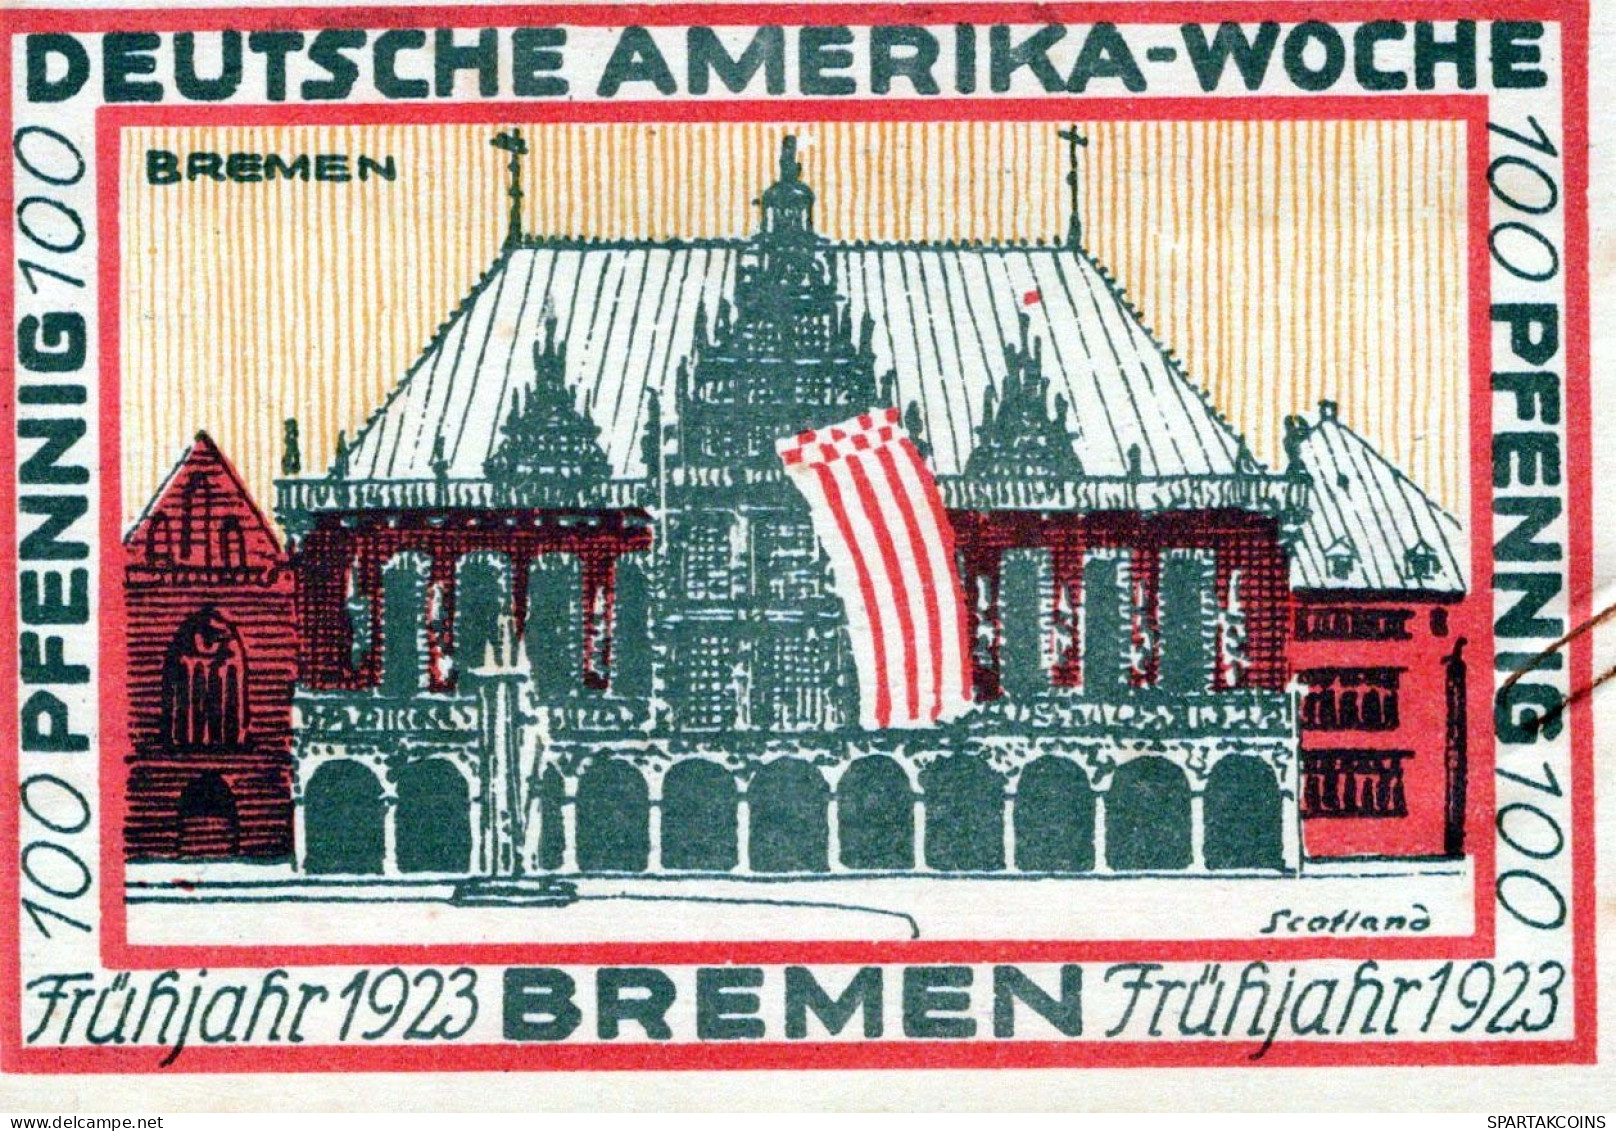 100 PFENNIG 1923 Stadt BREMEN Bremen UNC DEUTSCHLAND Notgeld Banknote #PA309 - [11] Lokale Uitgaven